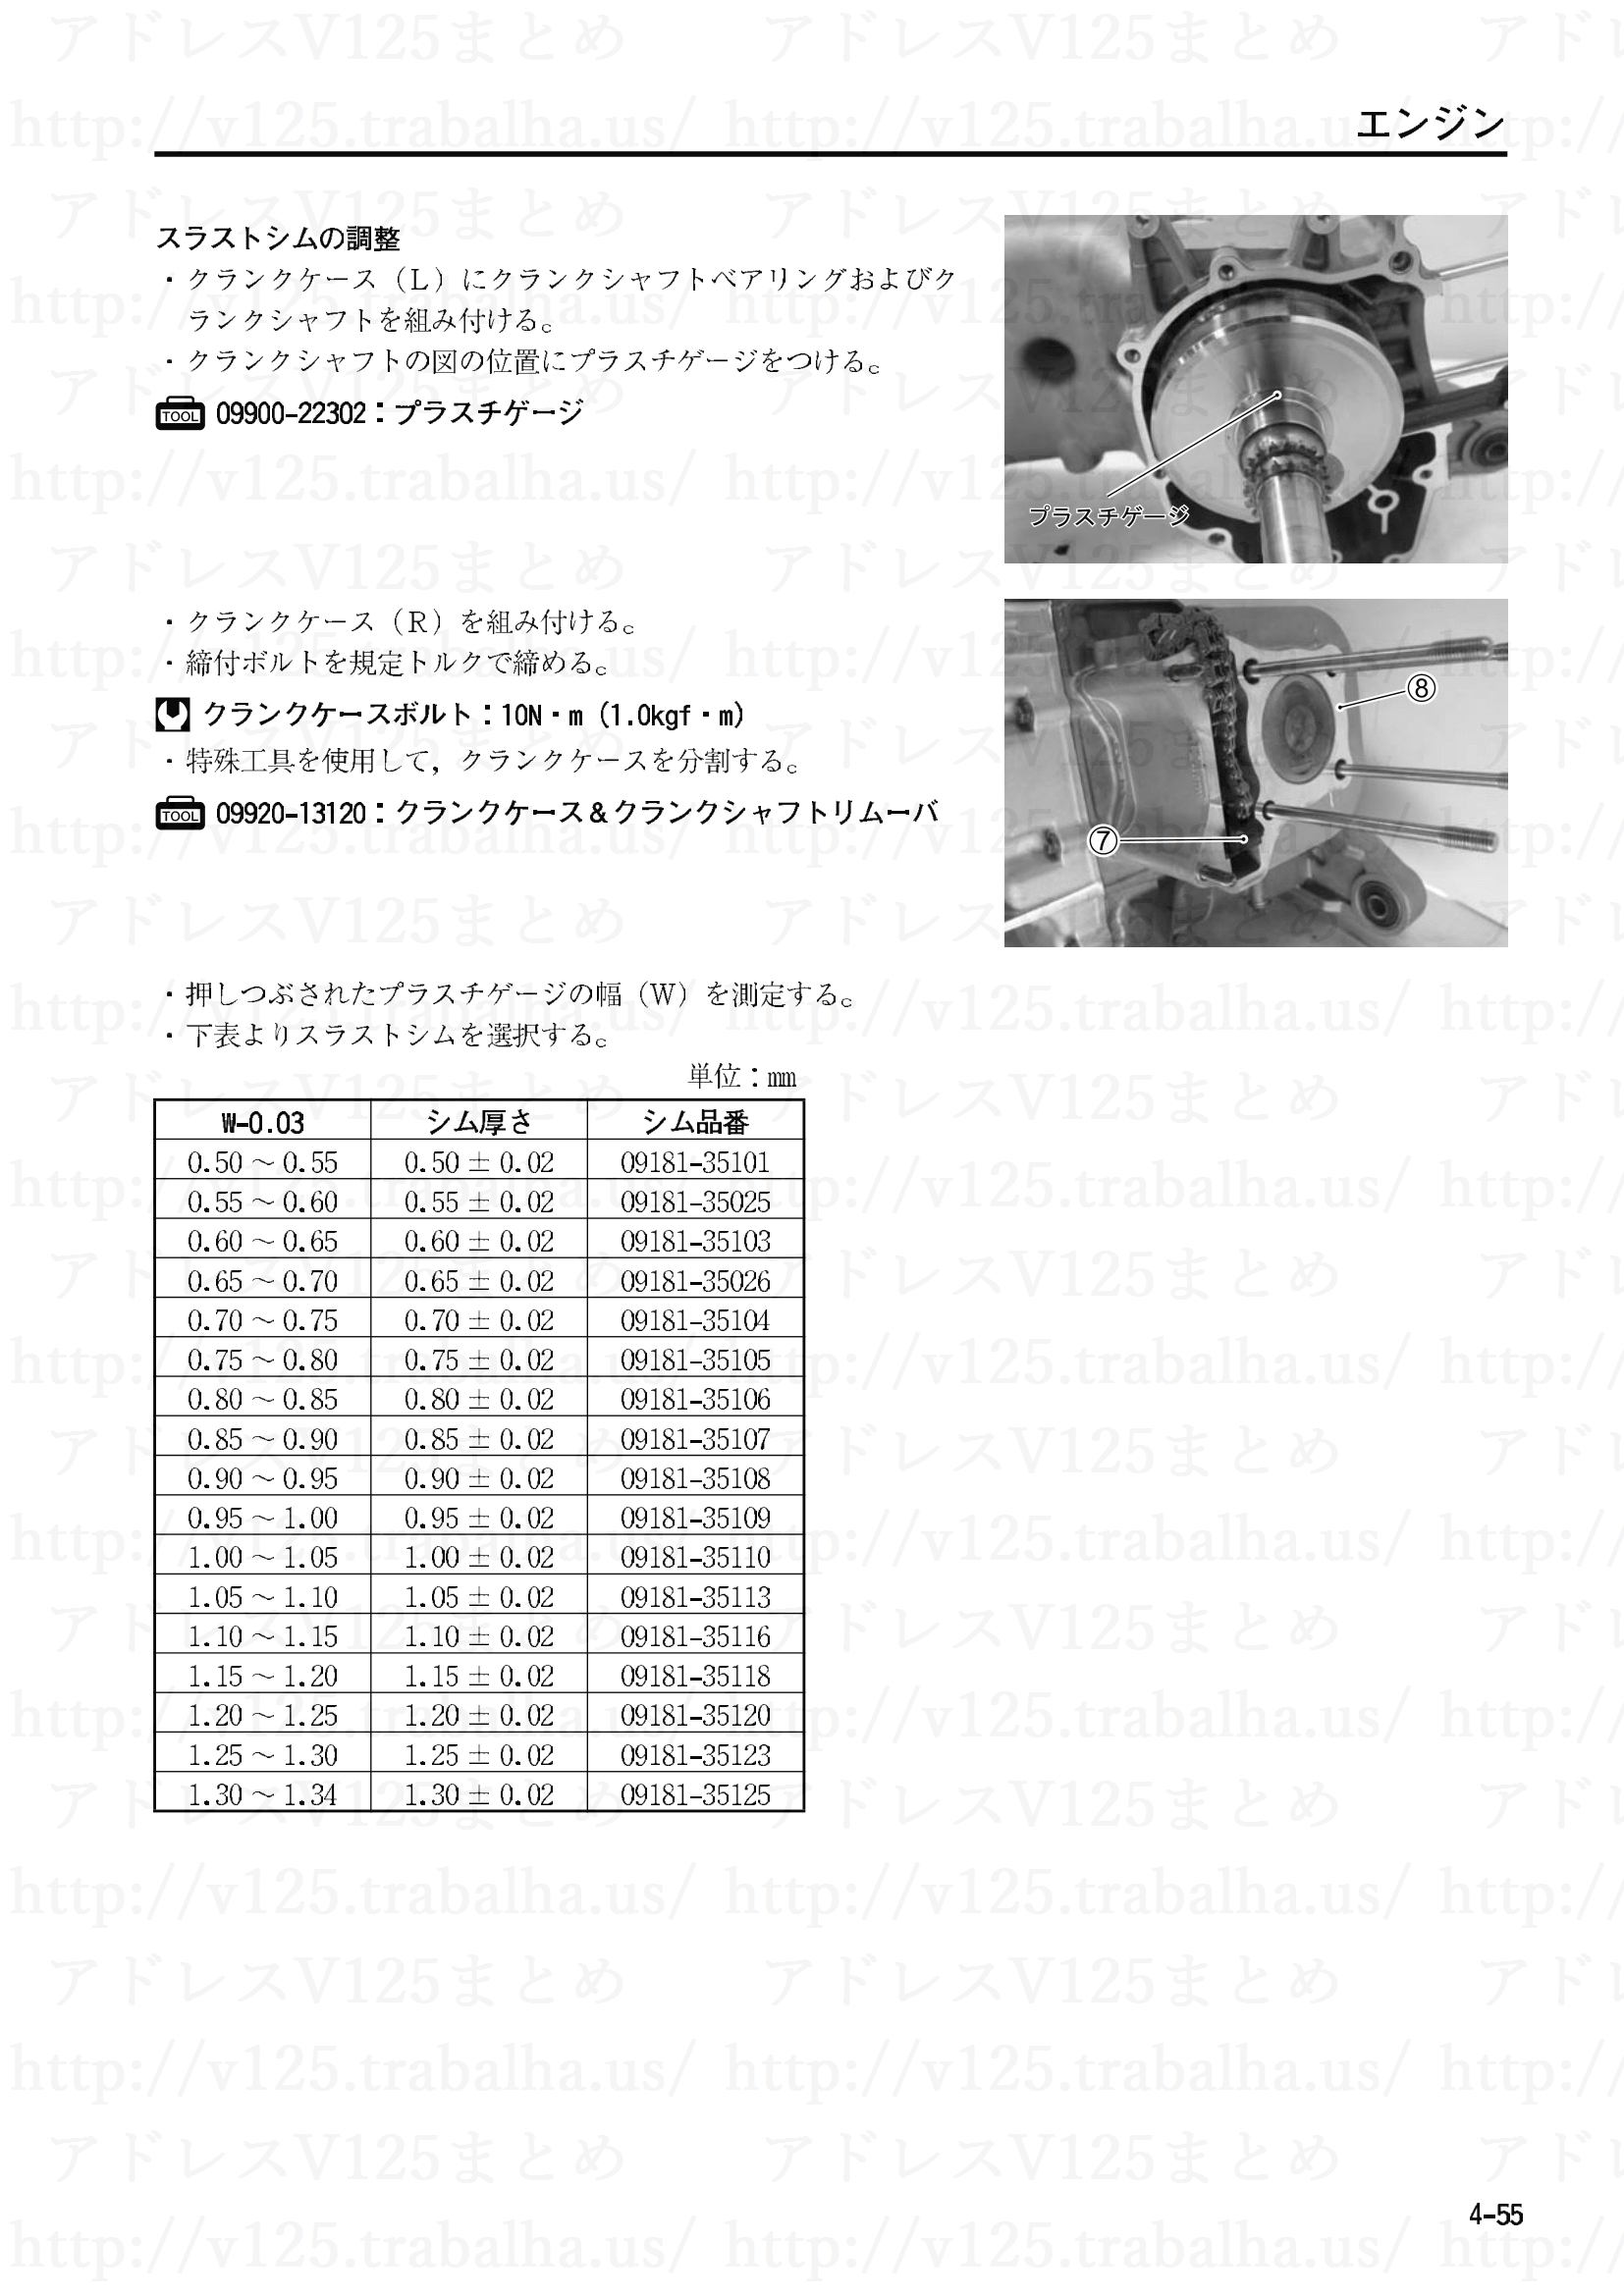 4-55【エンジン】エンジン部組部品の点検33